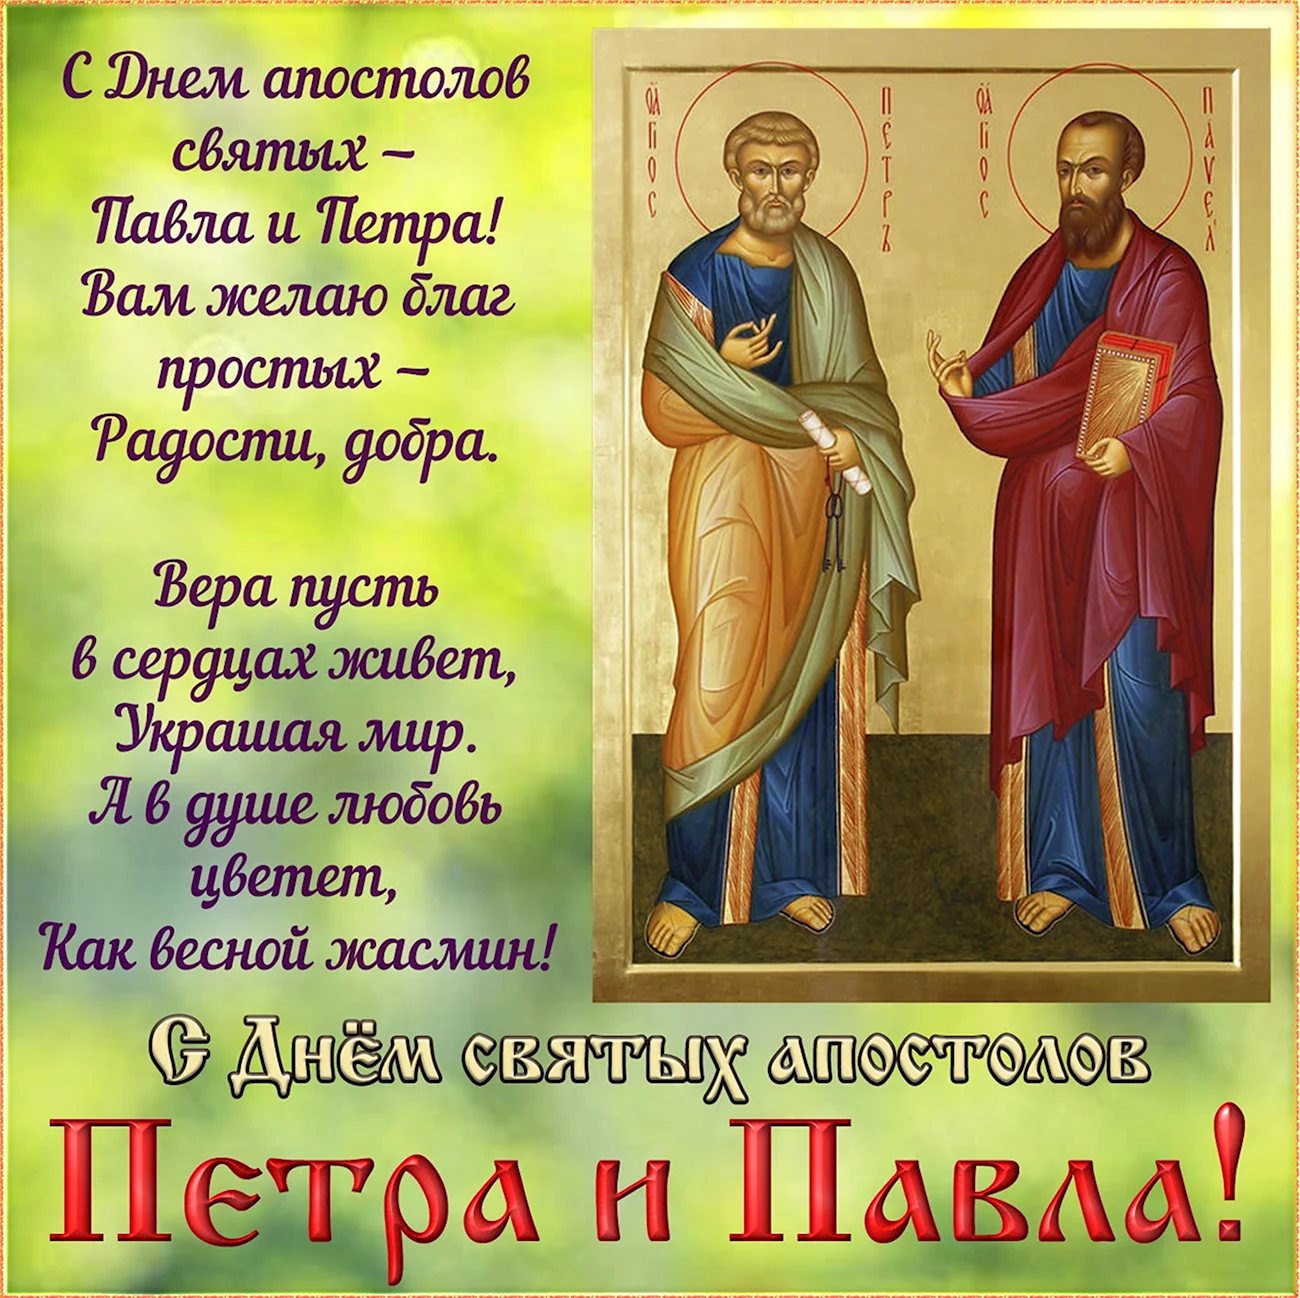 Сднем святые апостололов Петра и Павла. Поздравление